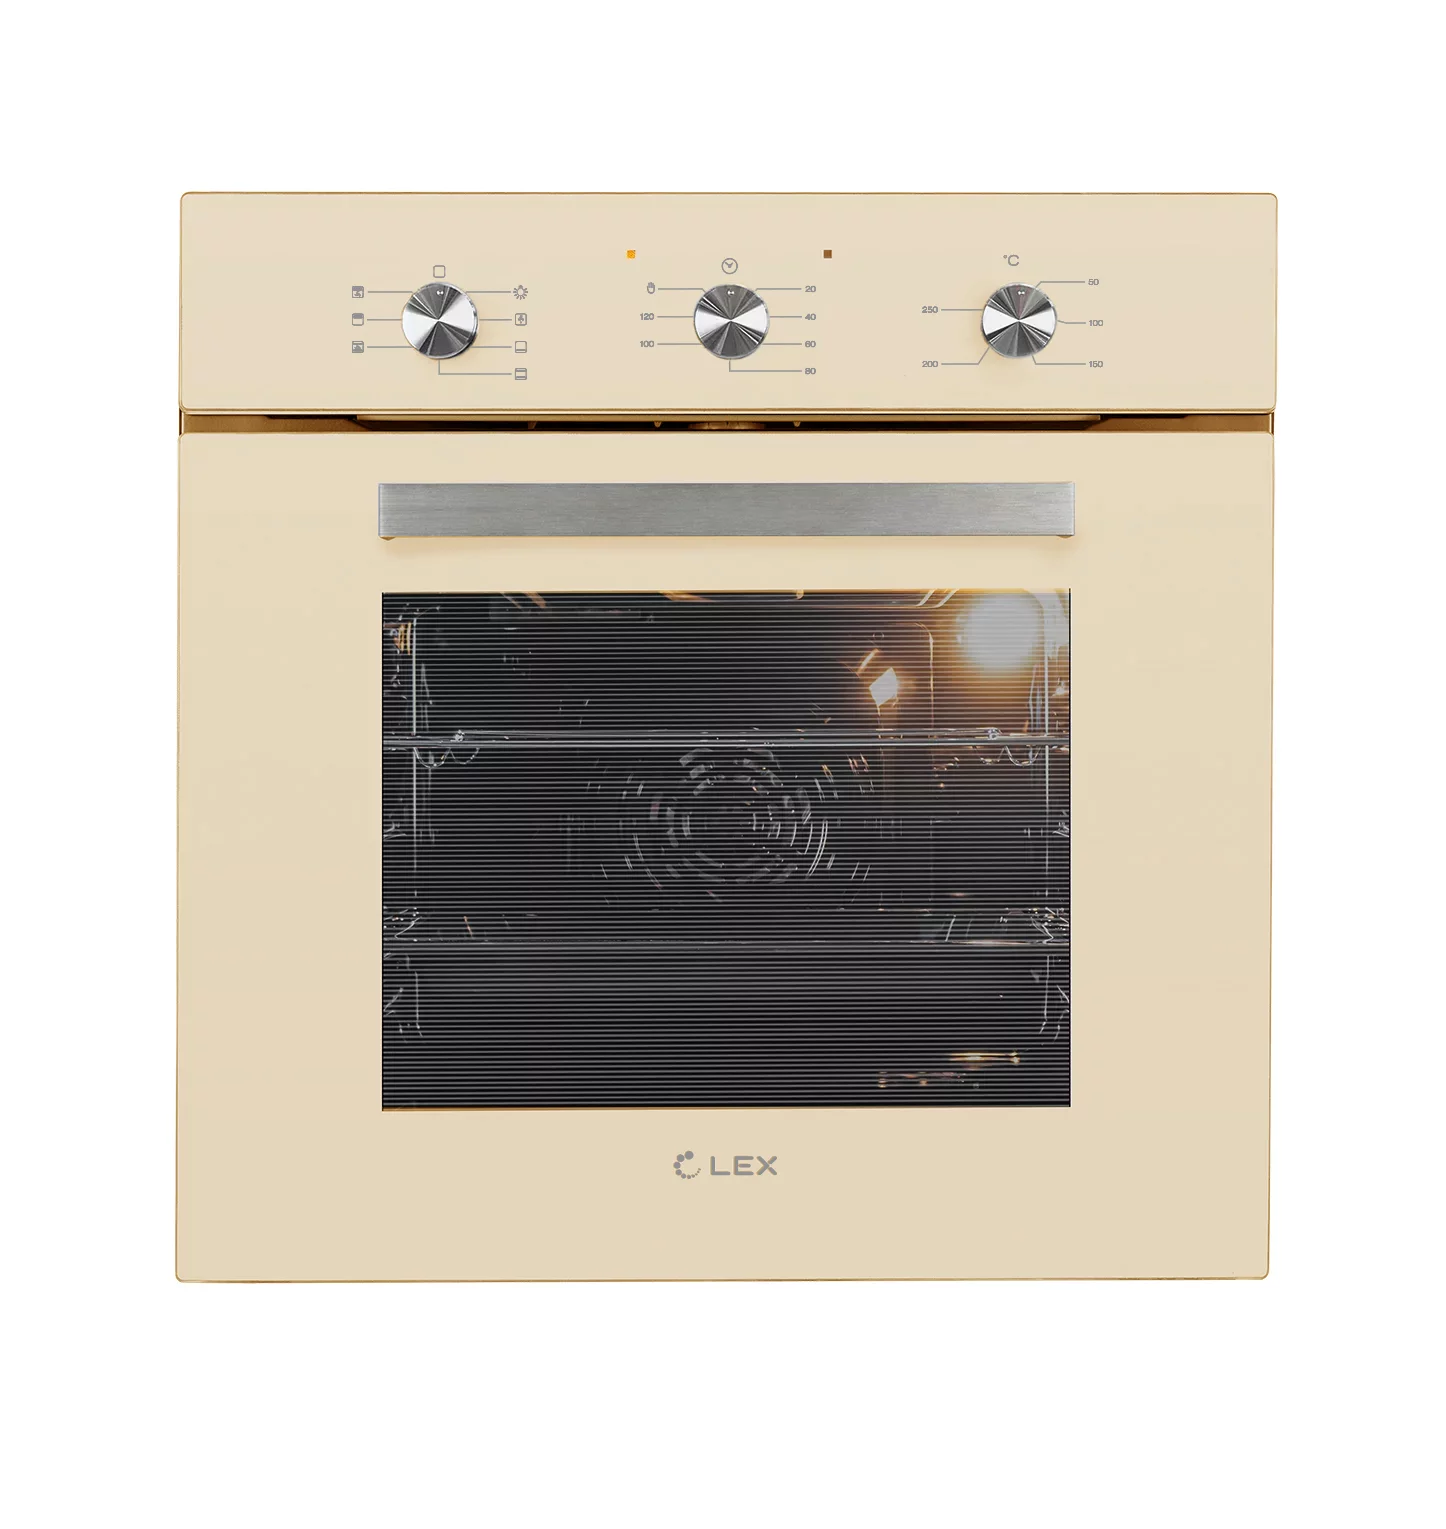 Духовой шкаф электрический LEX EDM 073 IV, бежевый/нержавеющая сталь (CHAO000382), цвет бежевый/нержавеющая сталь - фото 1